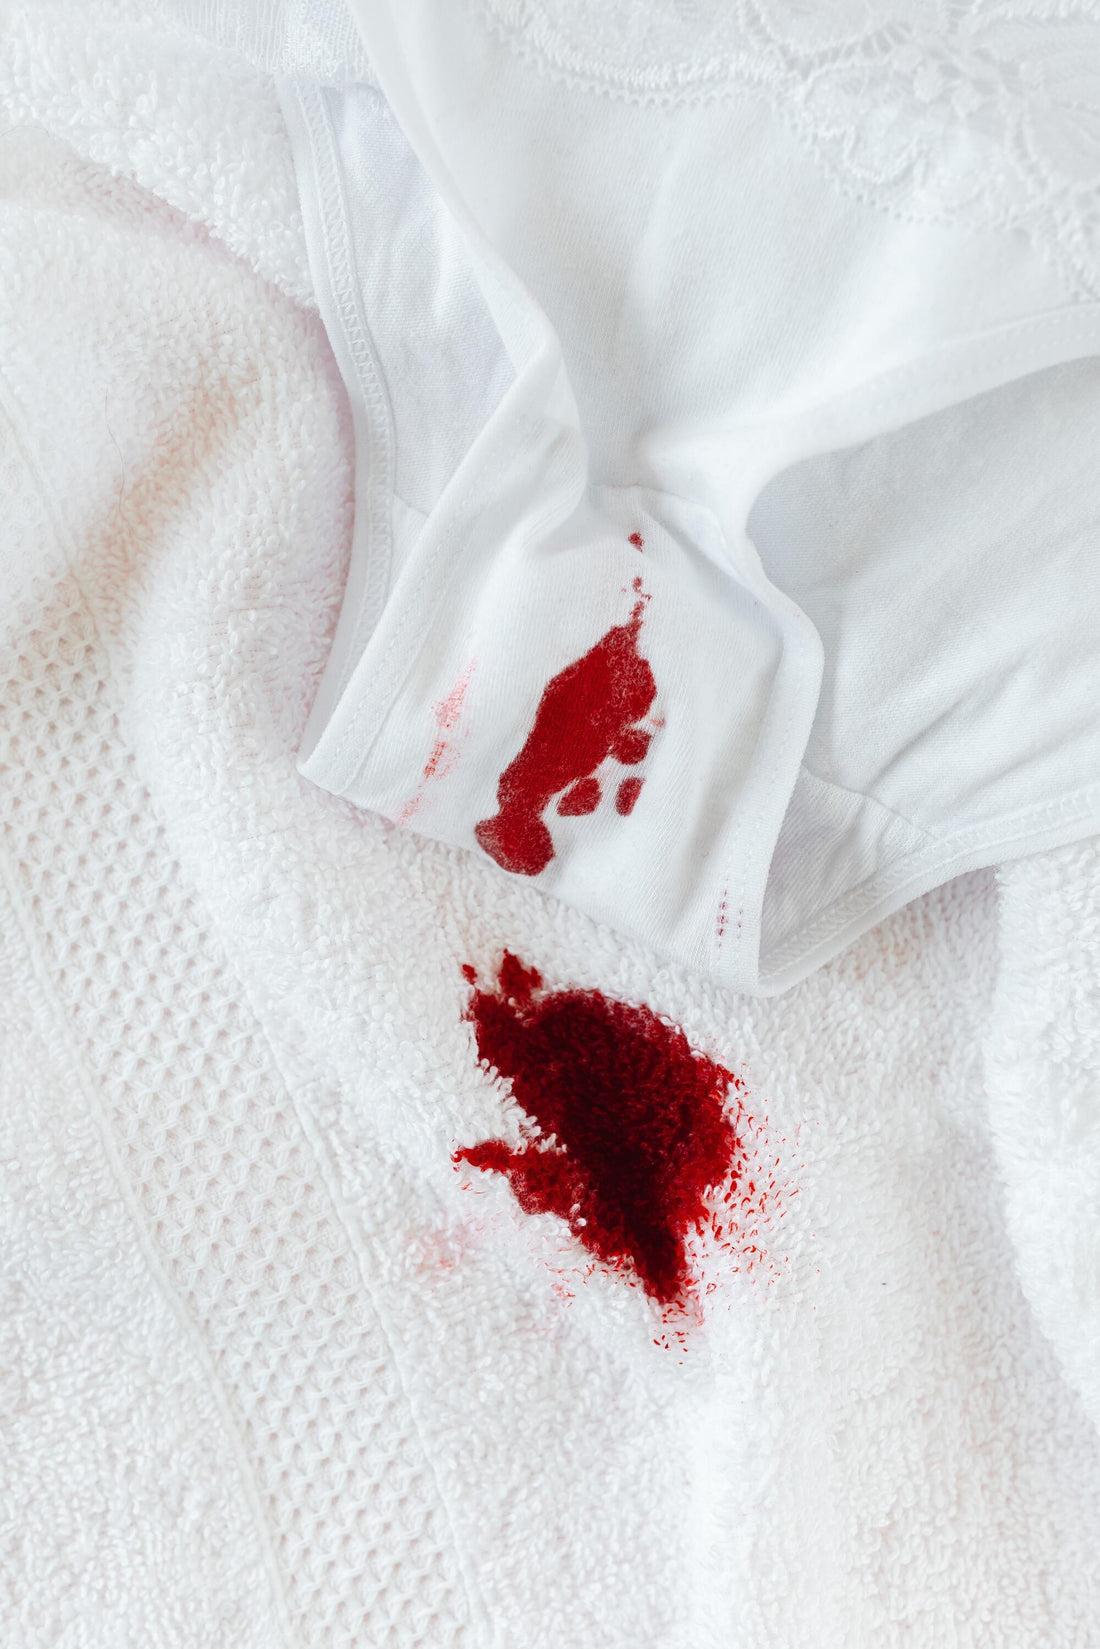 Menstruação desregulada: saiba mais sobre o assunto!